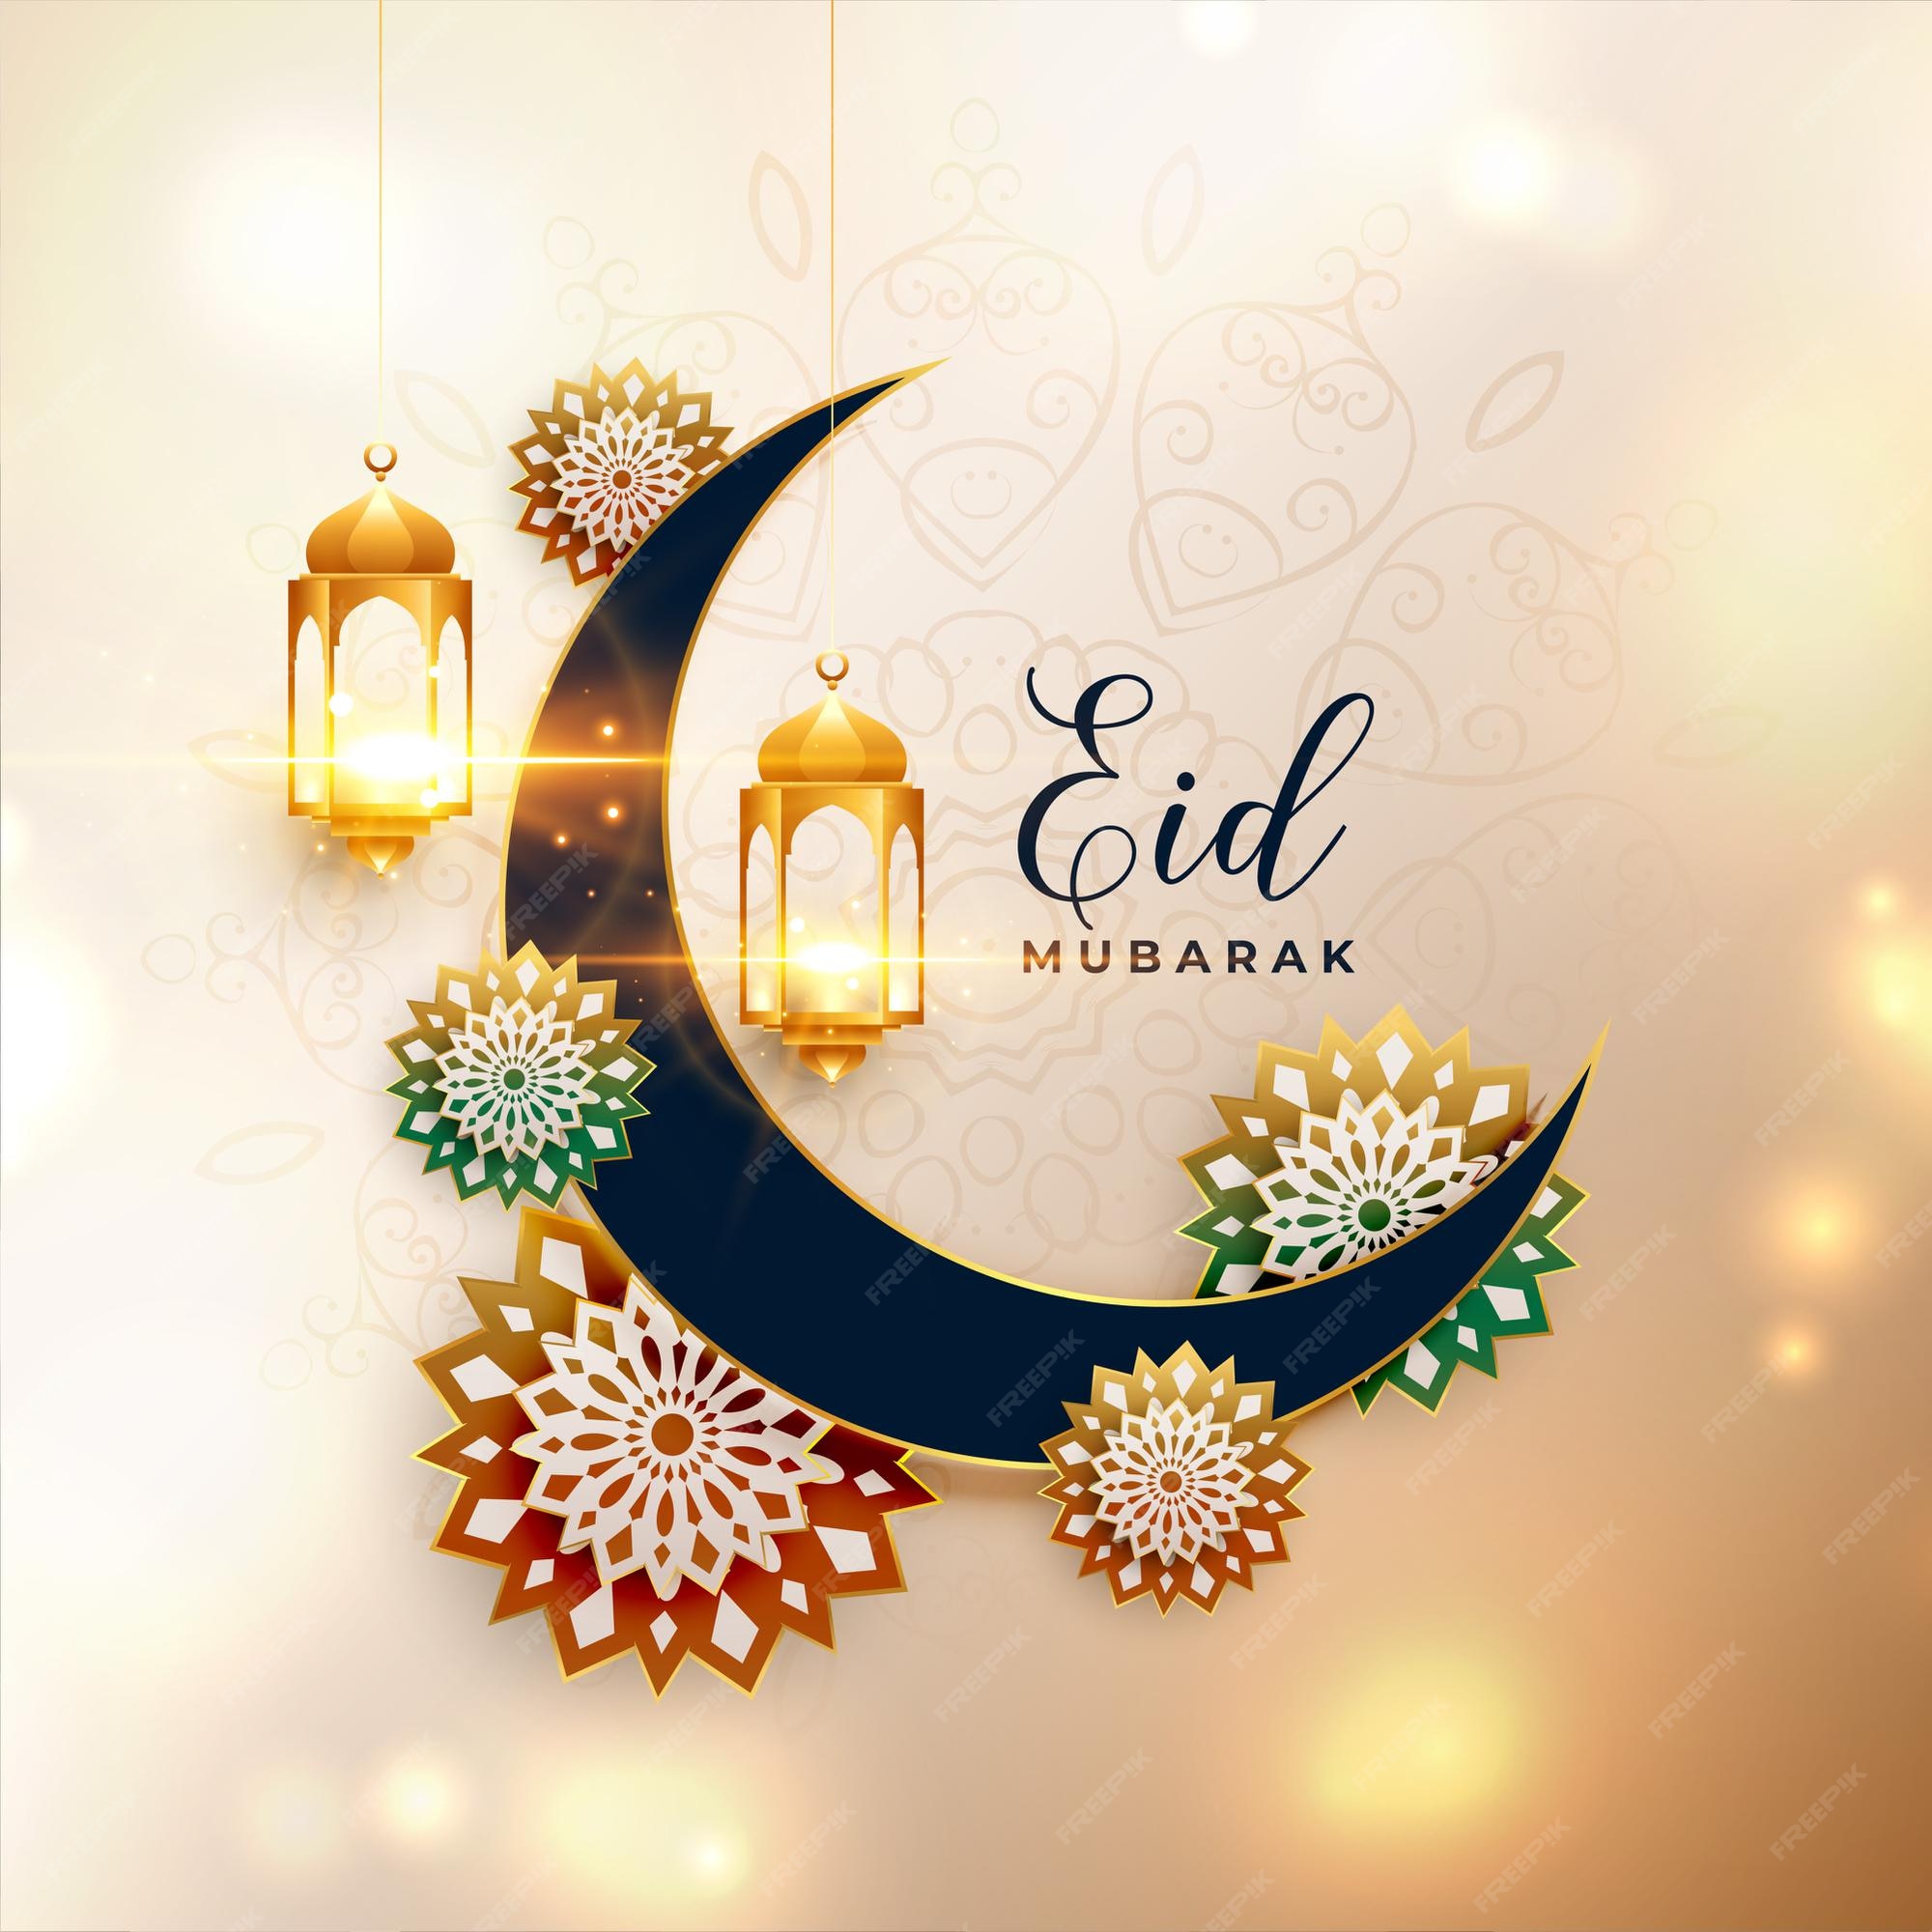 Eid Images - Free Download on Freepik